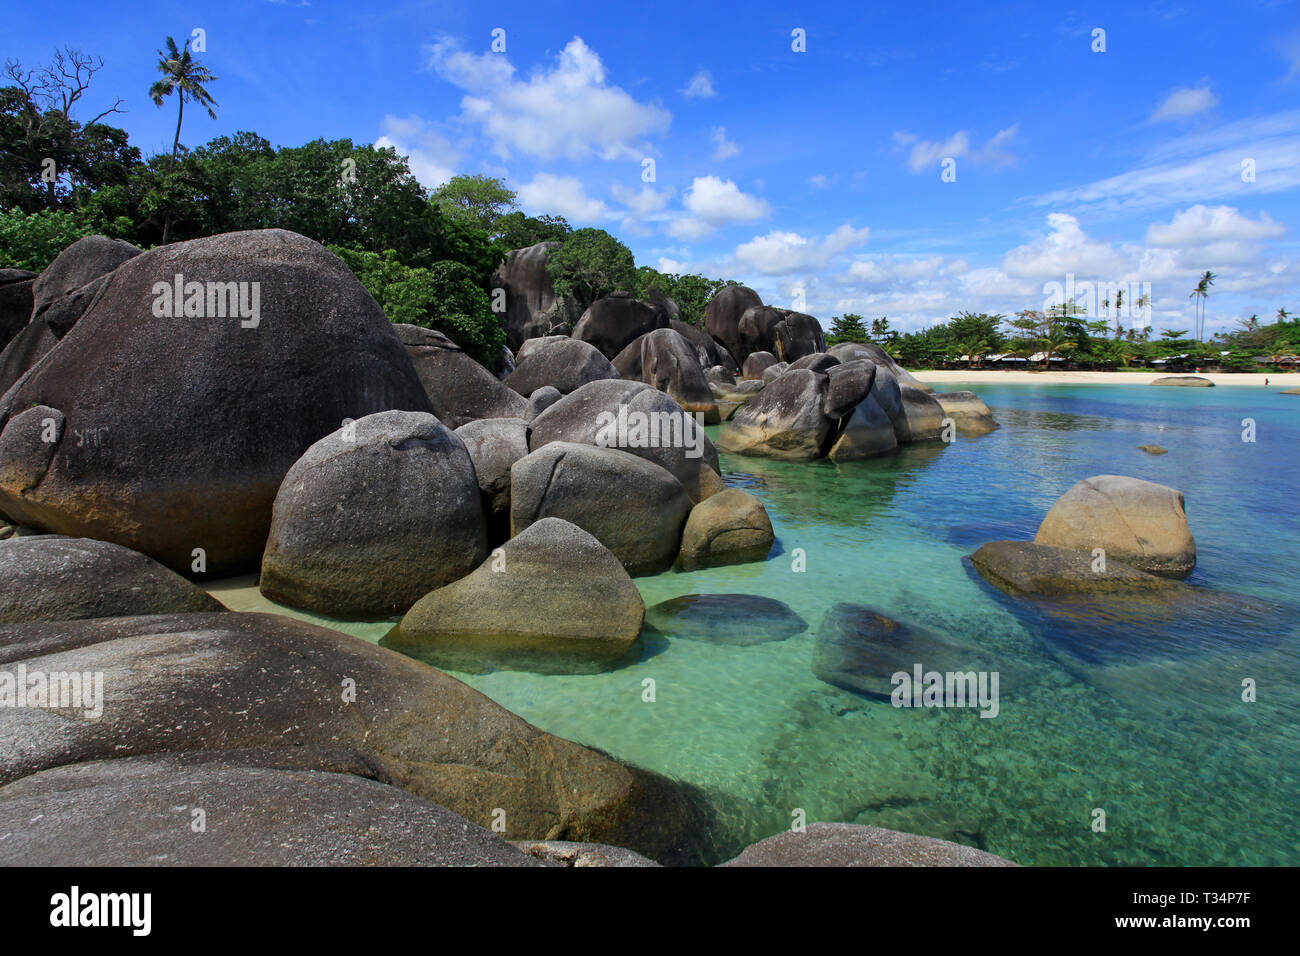 Tropical beach landscape, Tanjung Tinggi, Belitung, Indonesia Stock Photo